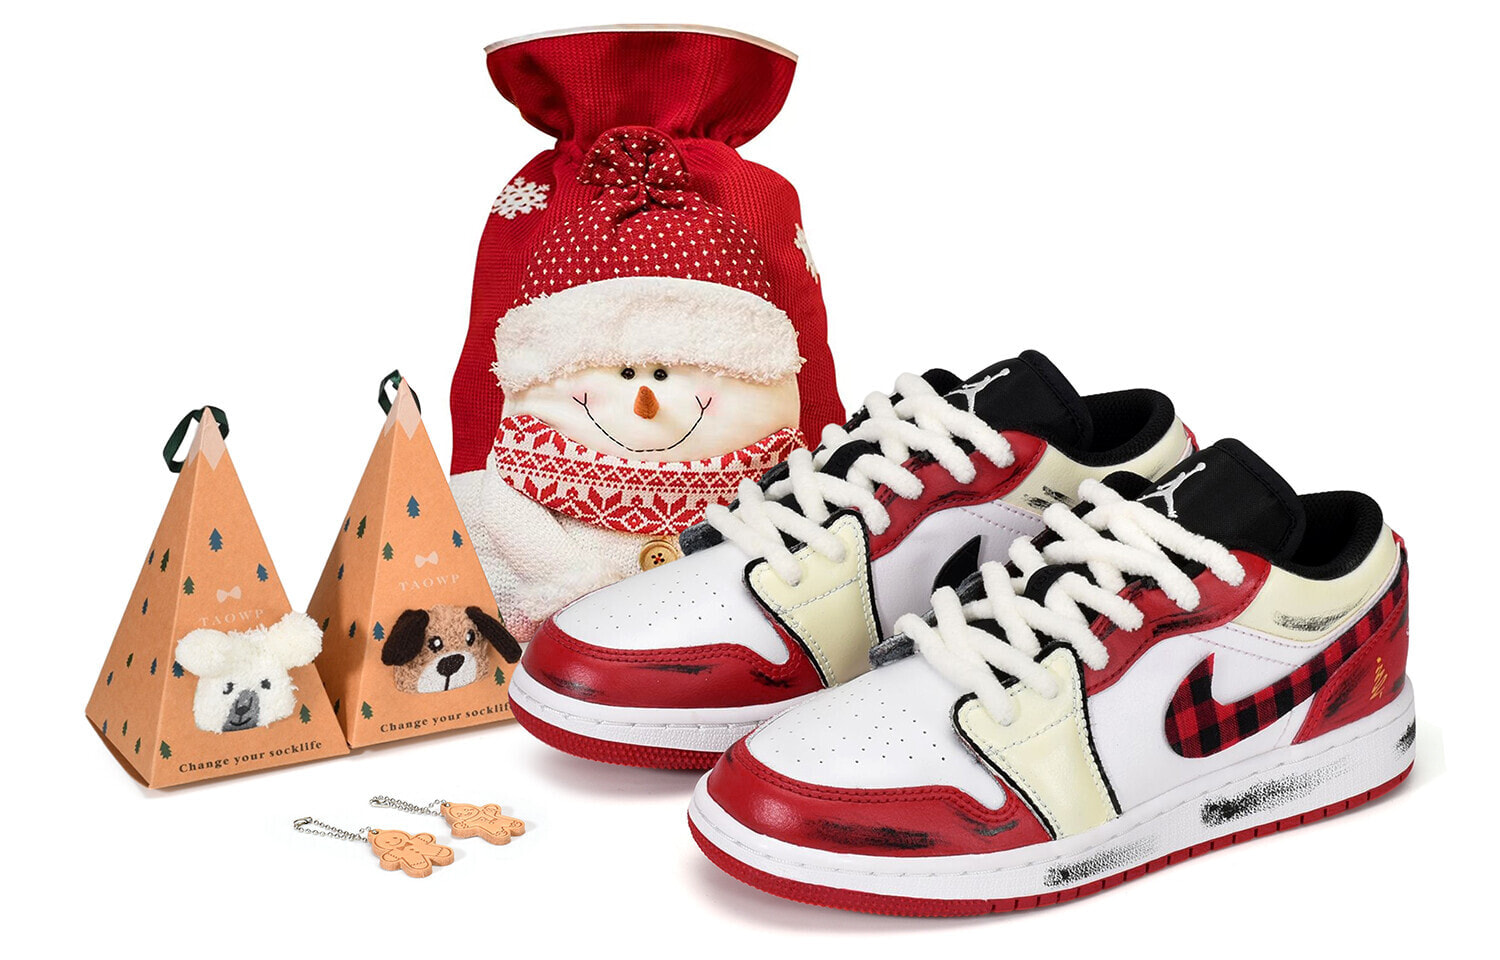 【定制球鞋】 Jordan Air Jordan 1 Low Bred Toe 圣诞节 圣诞格纹 低帮 复古篮球鞋 男款 红白 / Кроссовки Jordan Air Jordan 553558-612